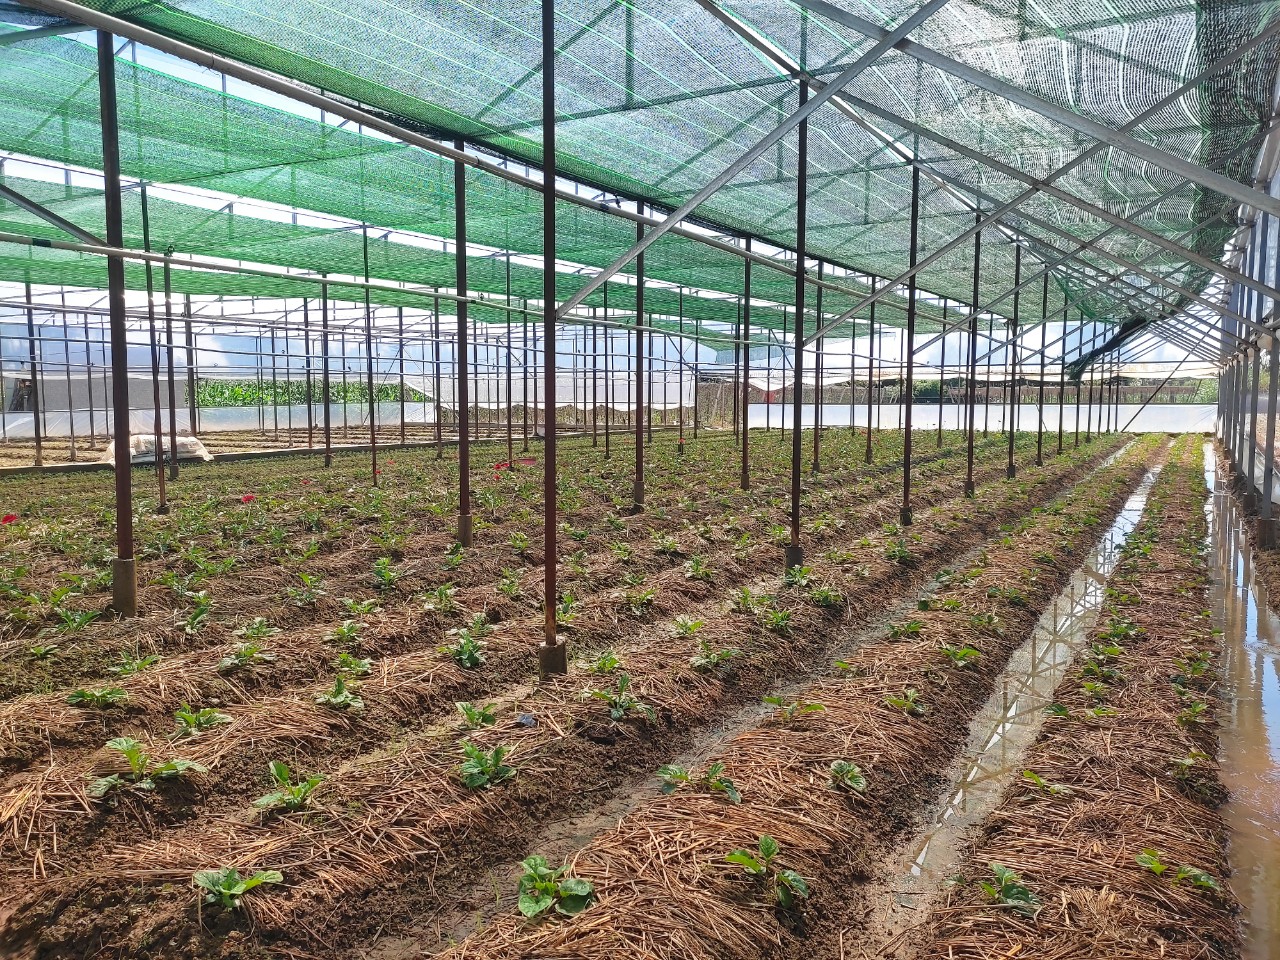 Trung tâm Dịch vụ nông nghiệp thành phố tổ chức nghiệm thu mô hình “Xây dựng nhà lồng trồng hoa” ở xã Nghĩa Hà